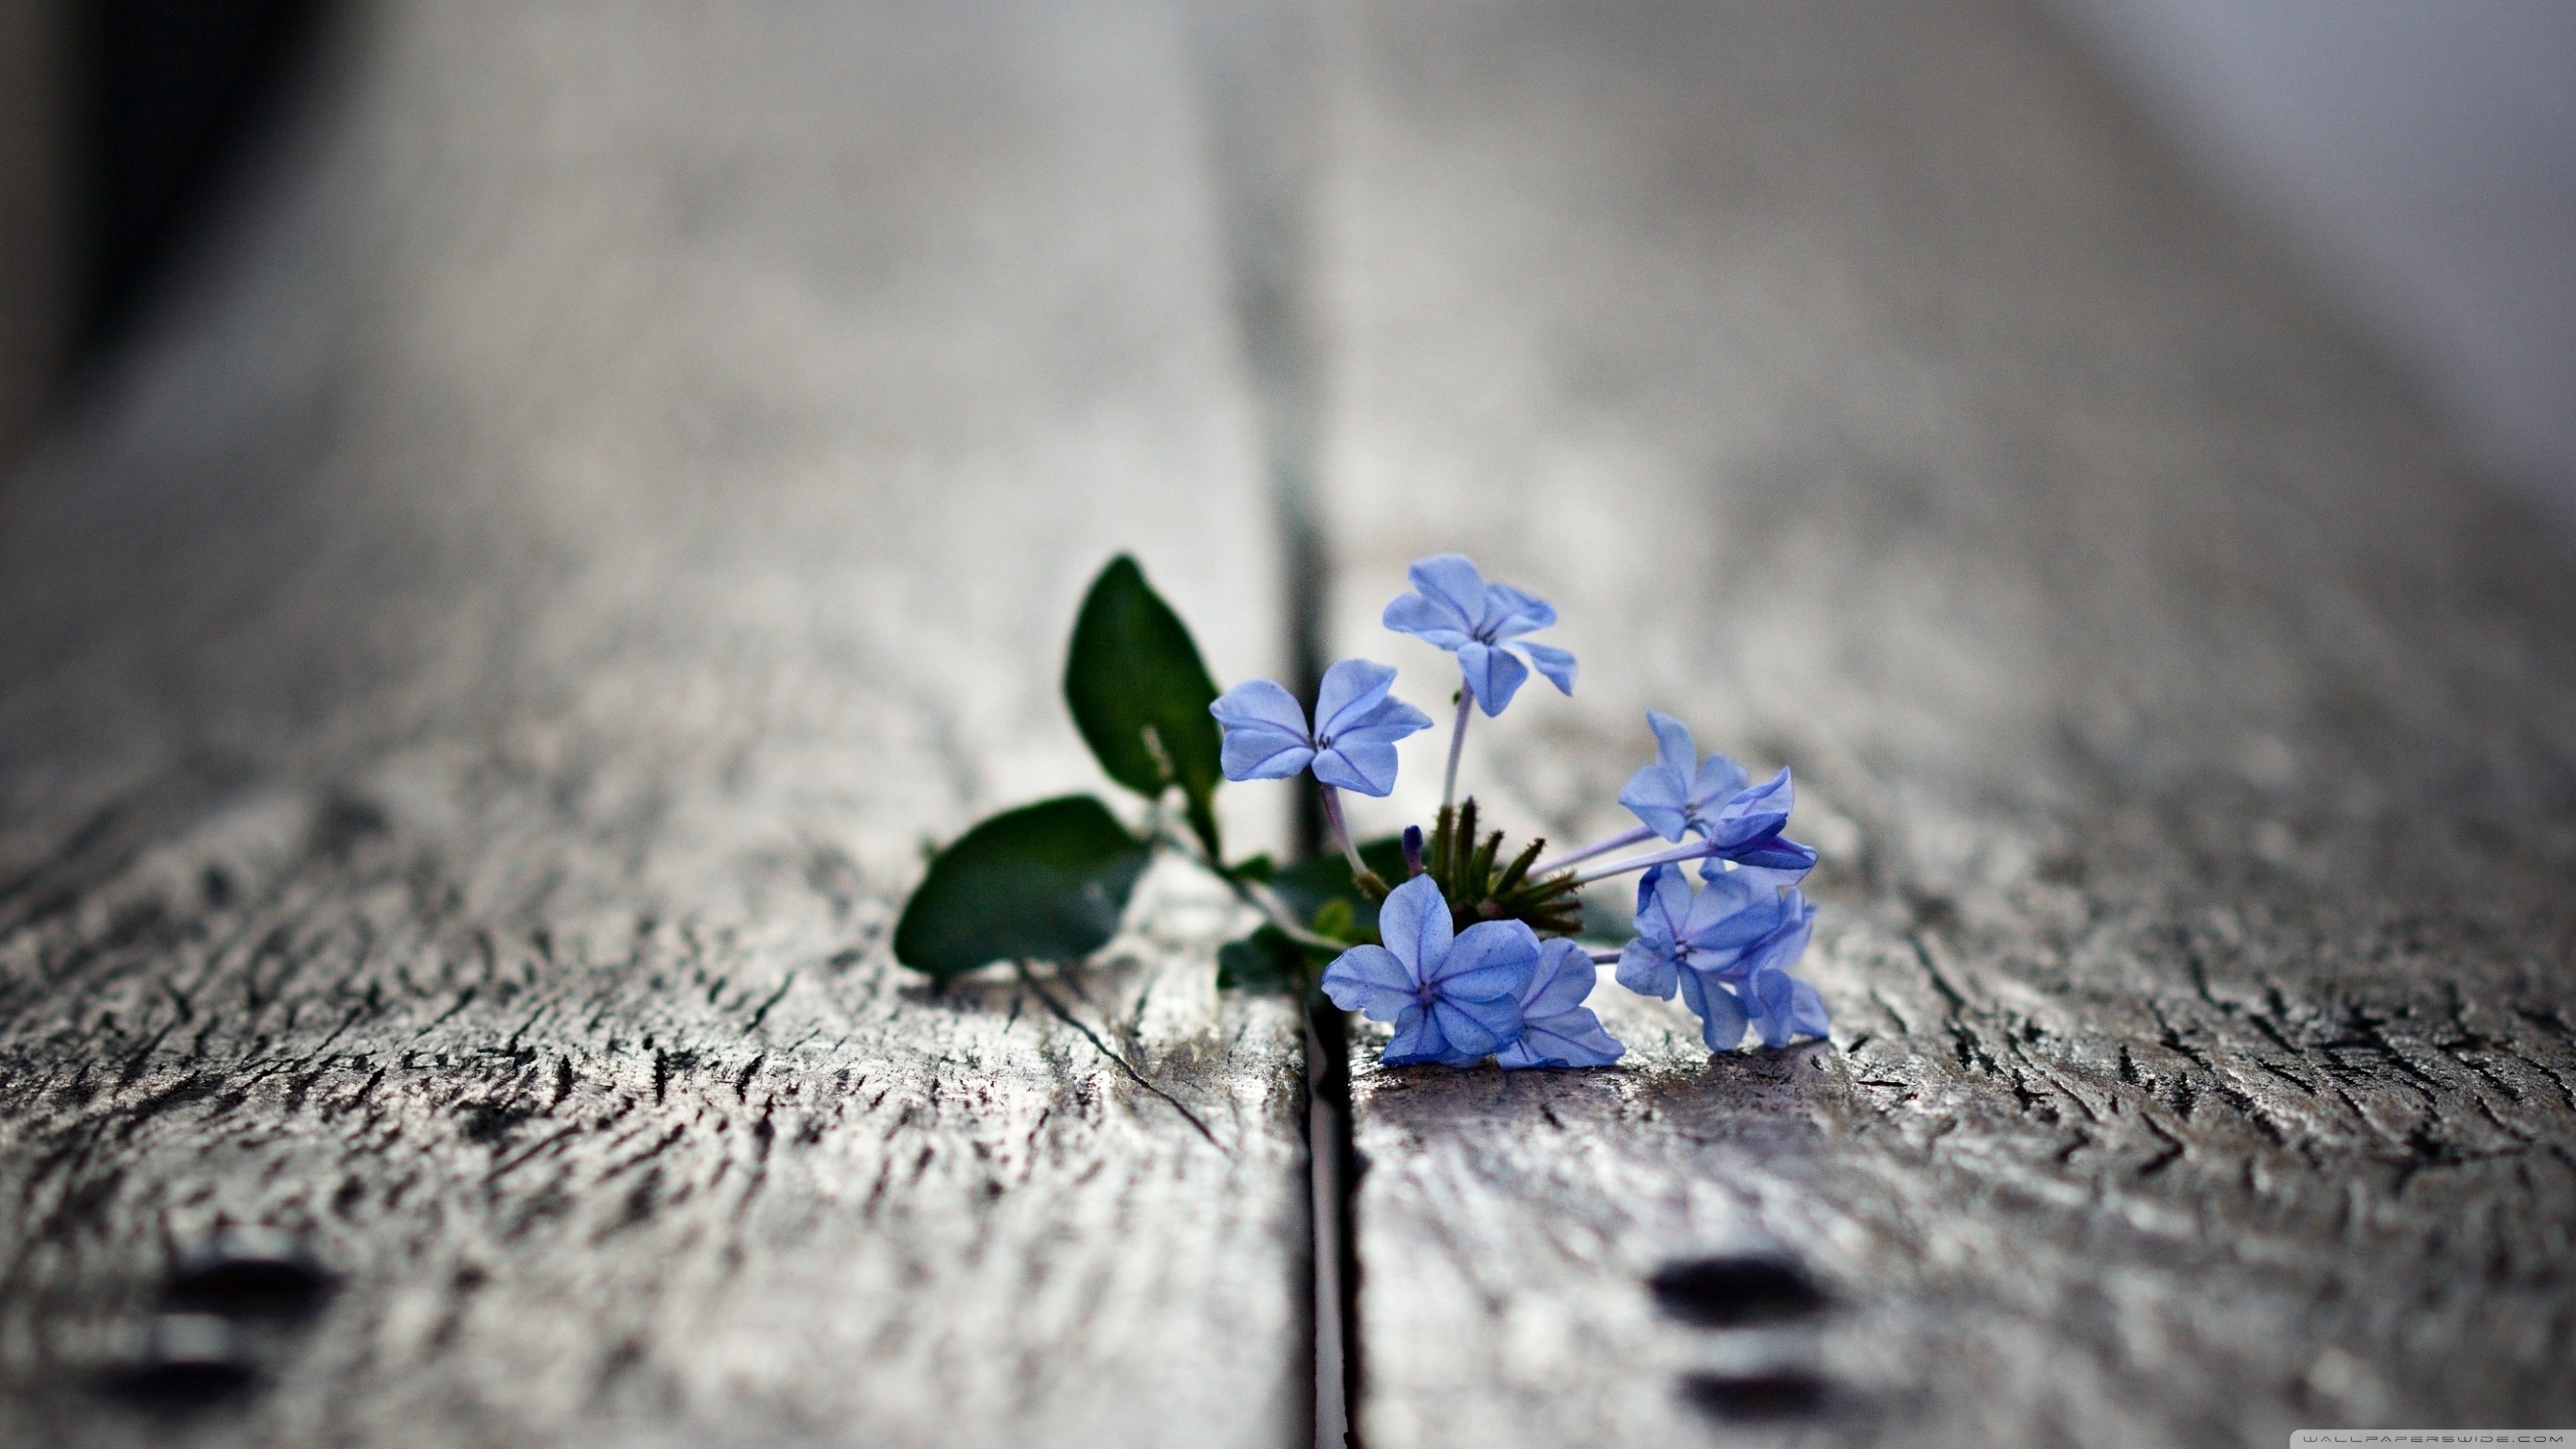 wooden surface, Flowers, Macro, Depth of field, Blue flowers Wallpaper